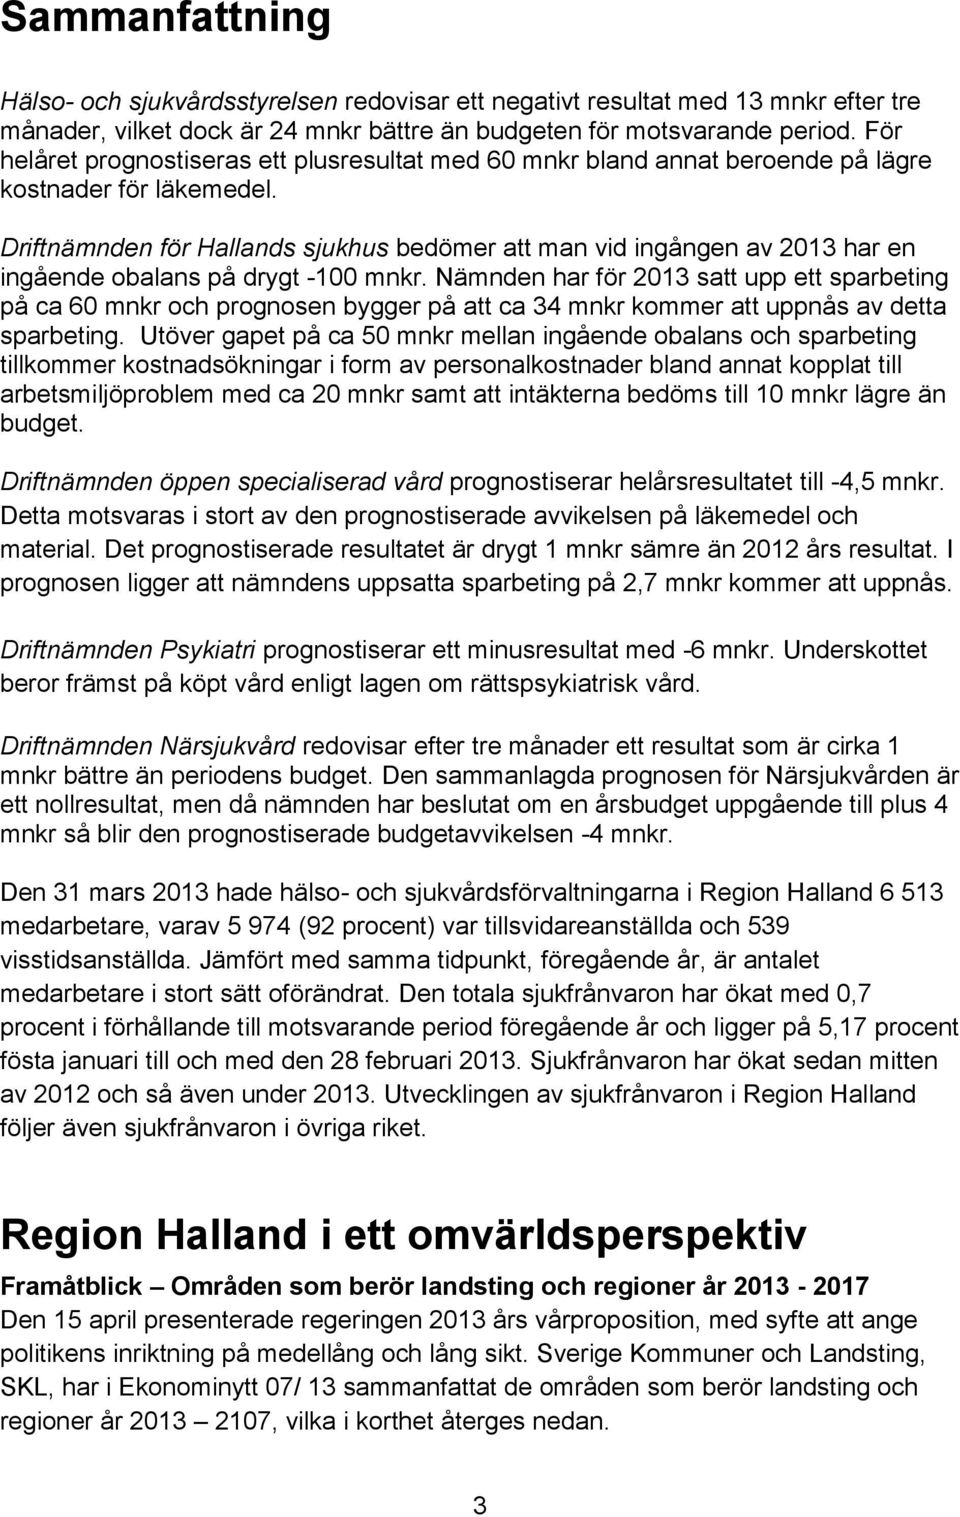 Driftnämnden för Hallands sjukhus bedömer att man vid ingången av 2013 har en ingående obalans på drygt -100 mnkr.